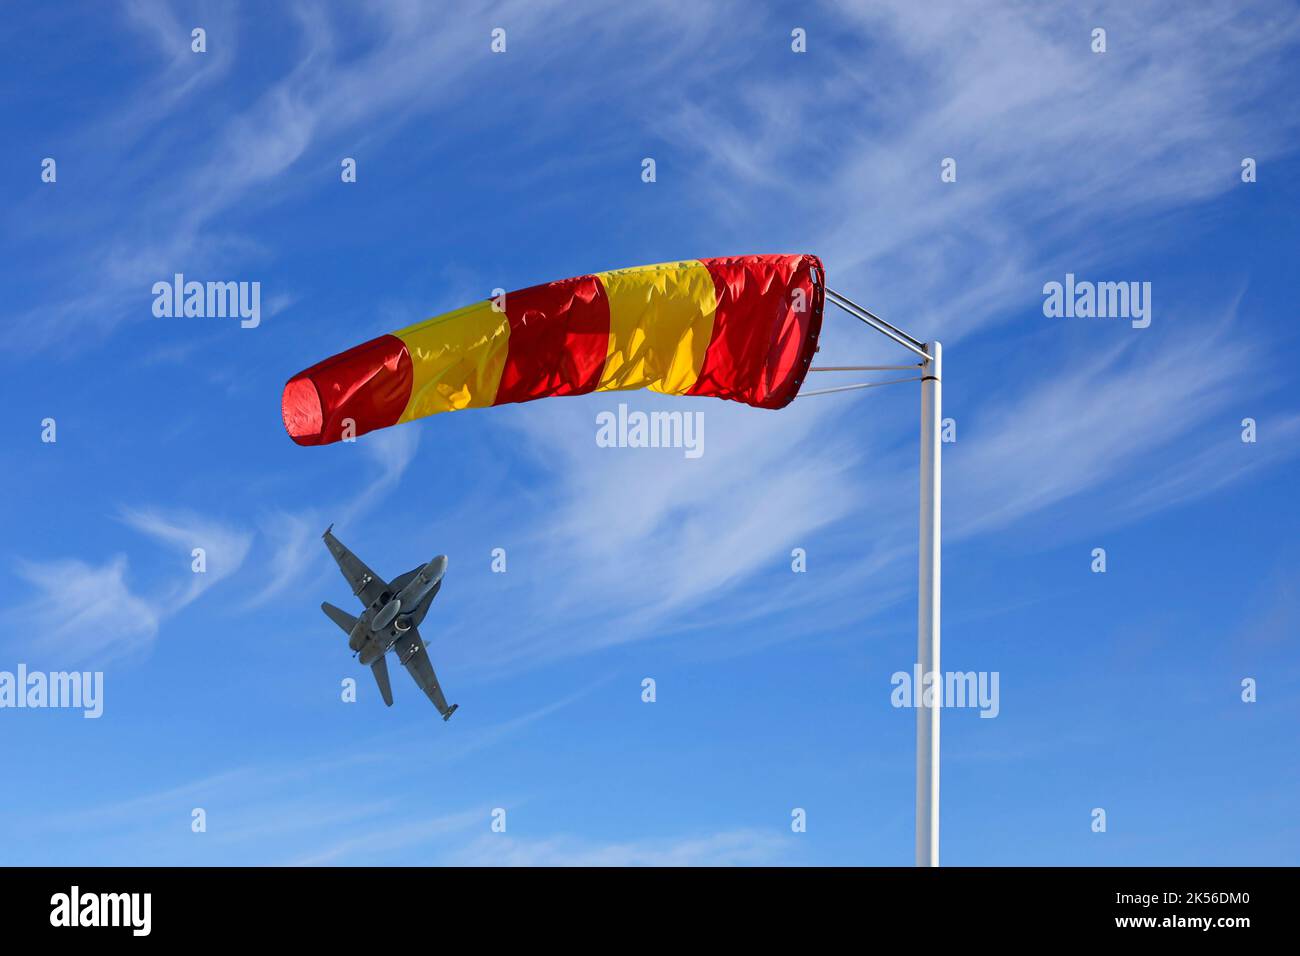 Bonnette à vent rayée jaune et rouge ou cône vent contre un ciel magnifique avec un décollage de jet. Banque D'Images